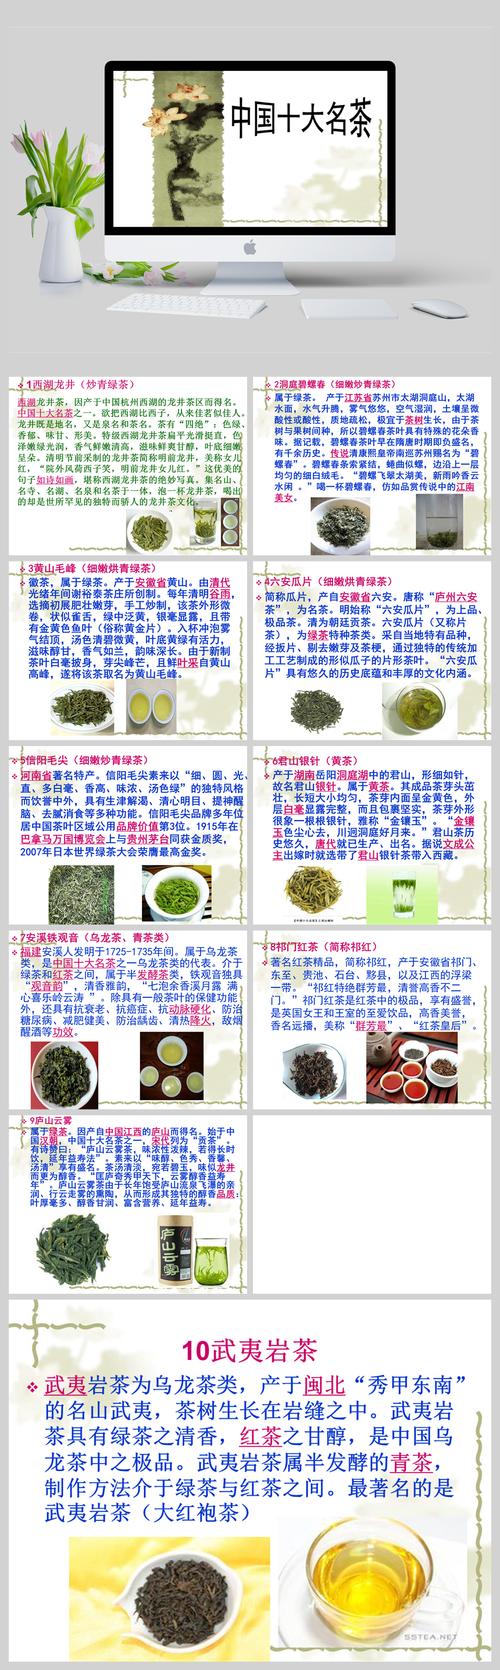 中国十大名茶种植方式是哪种,果茶